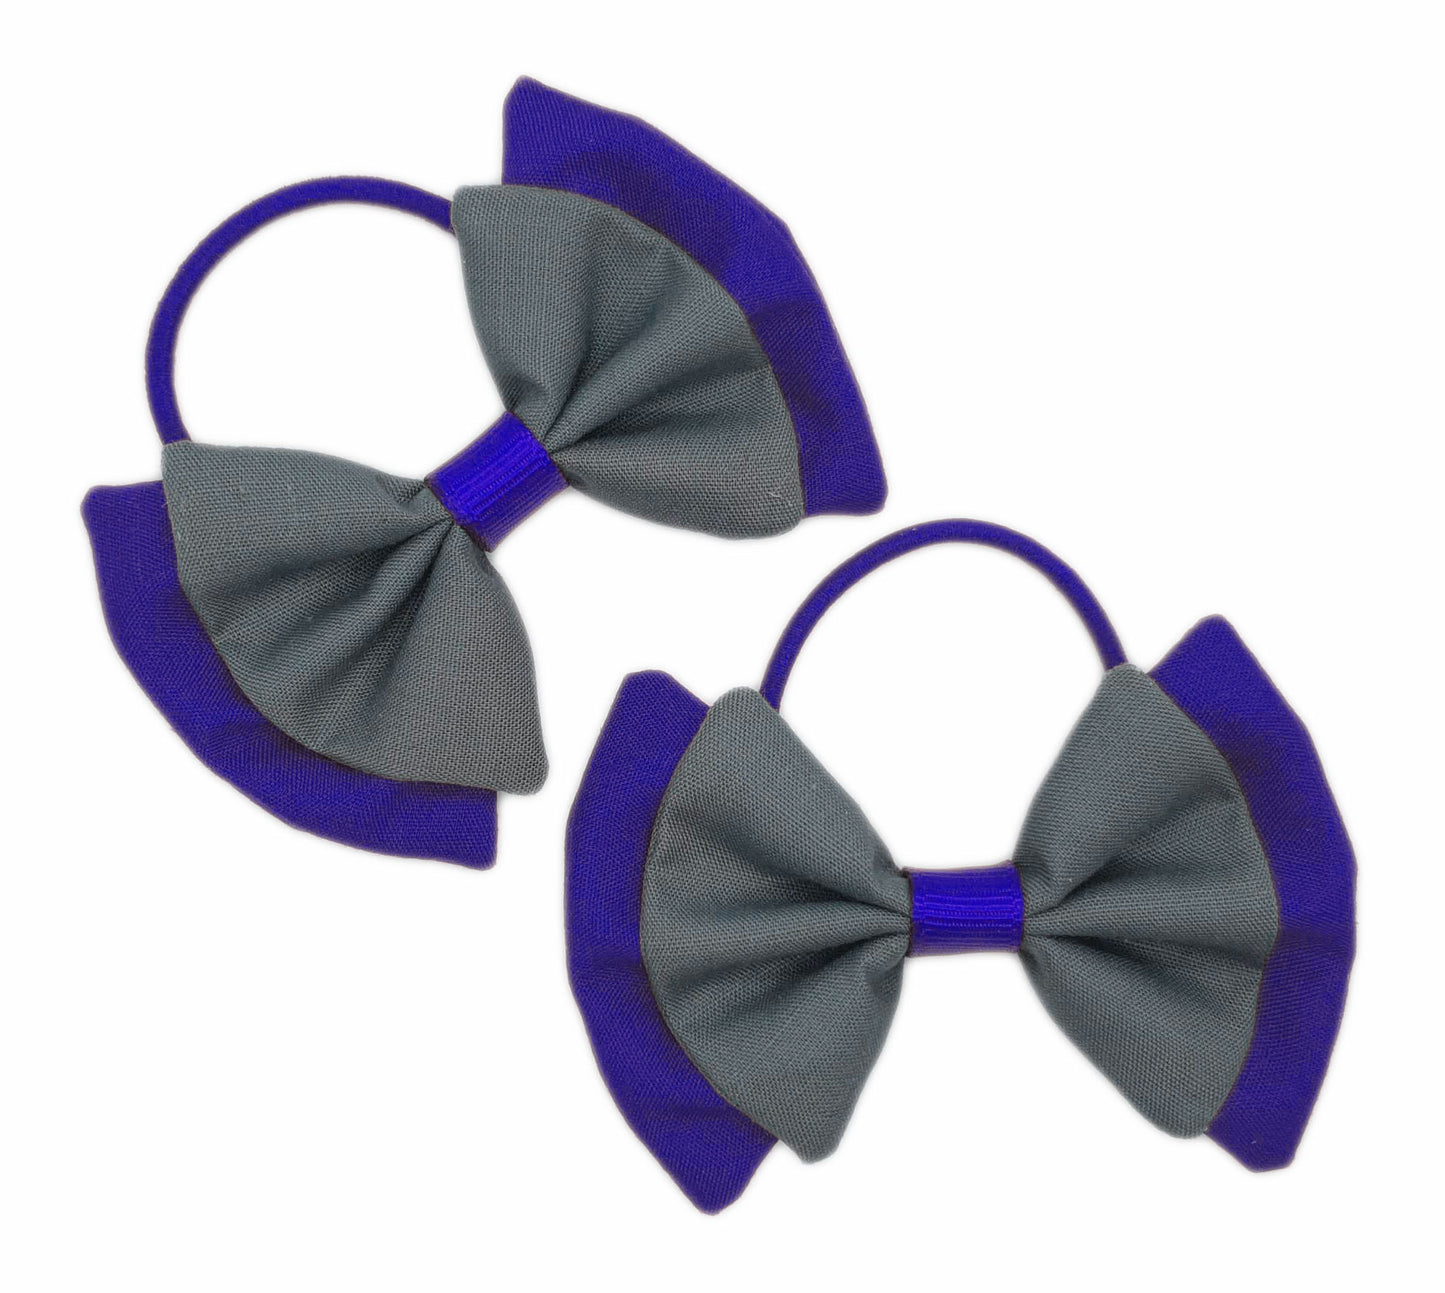 2x Royal blue and grey fabric hair bows